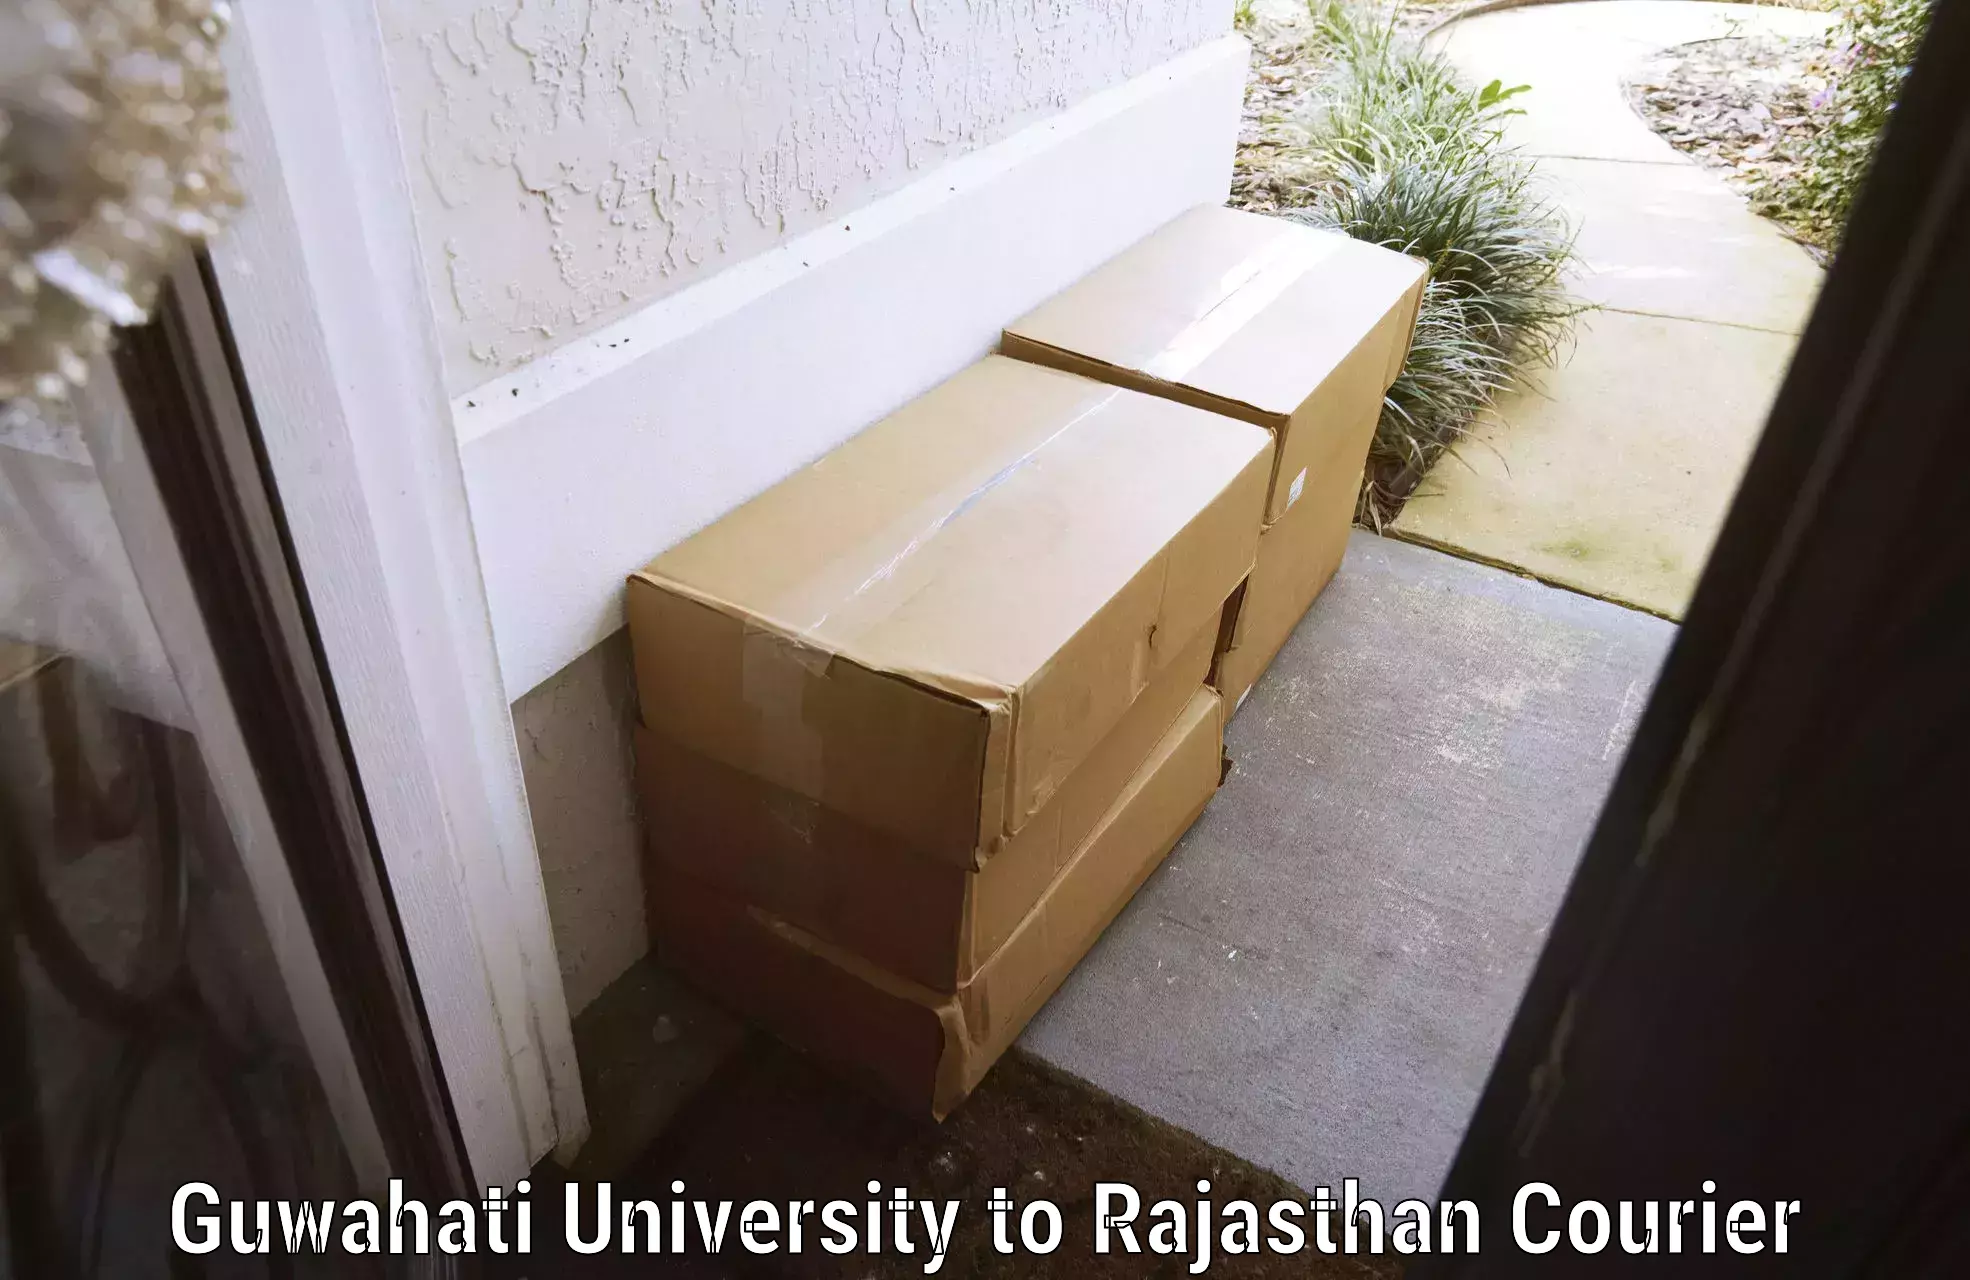 Baggage transport quote Guwahati University to Rajasthan